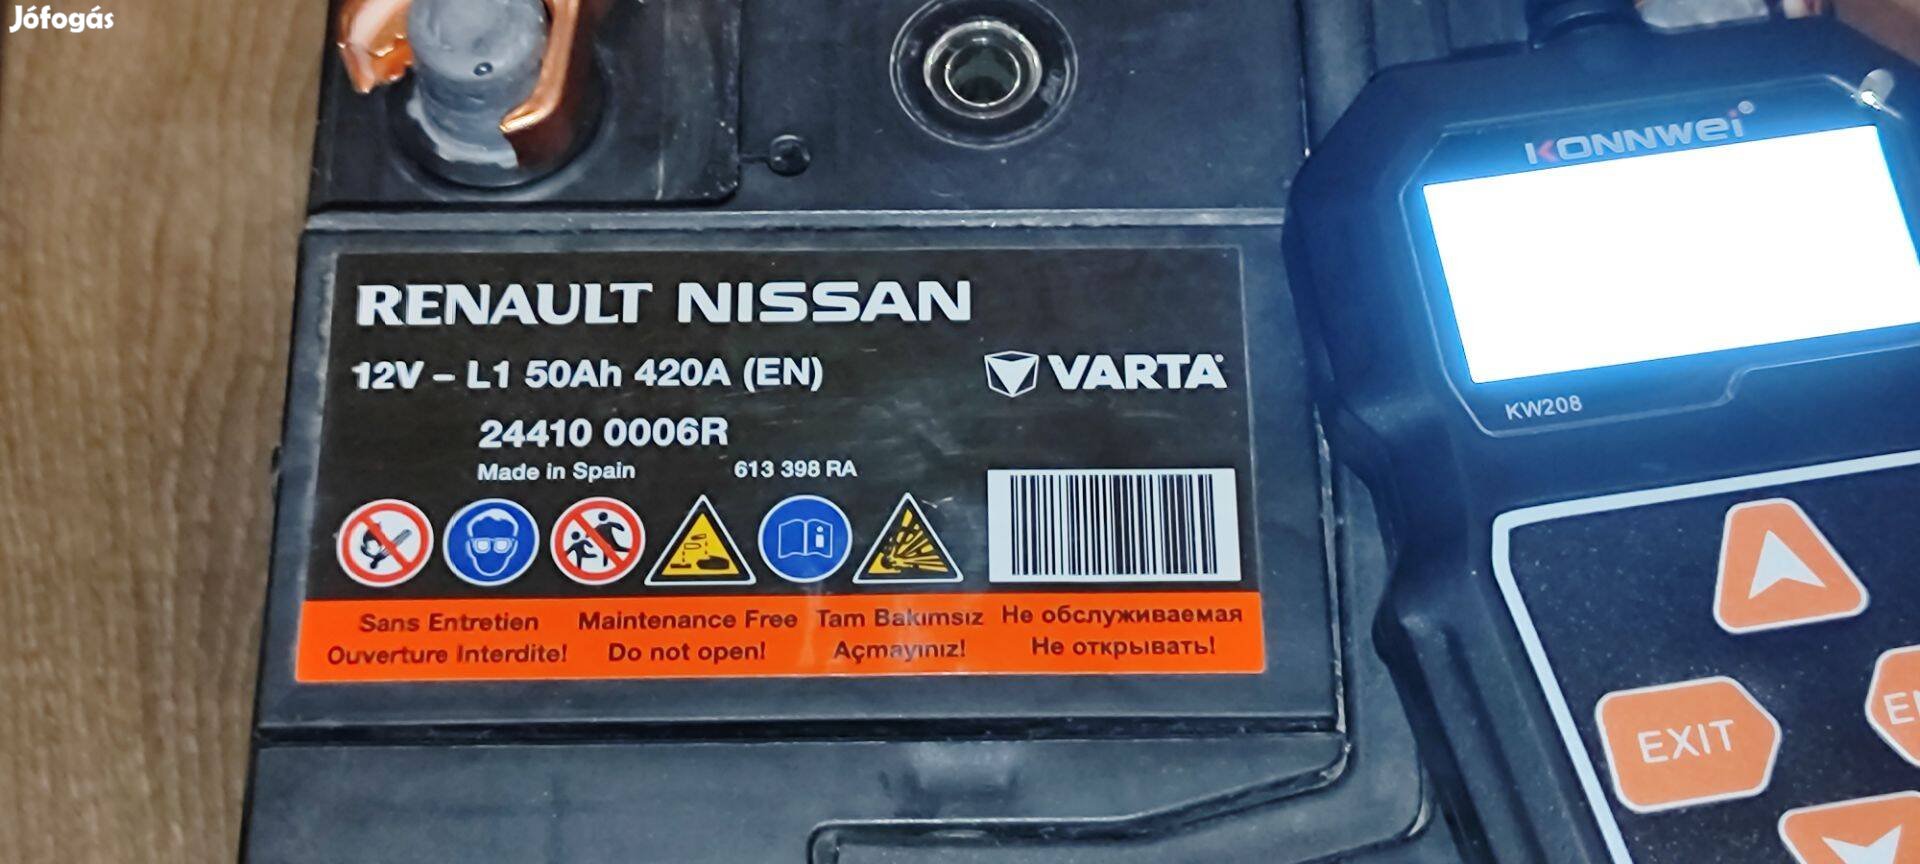 Nissan Renault Varta akkumulátor eladó